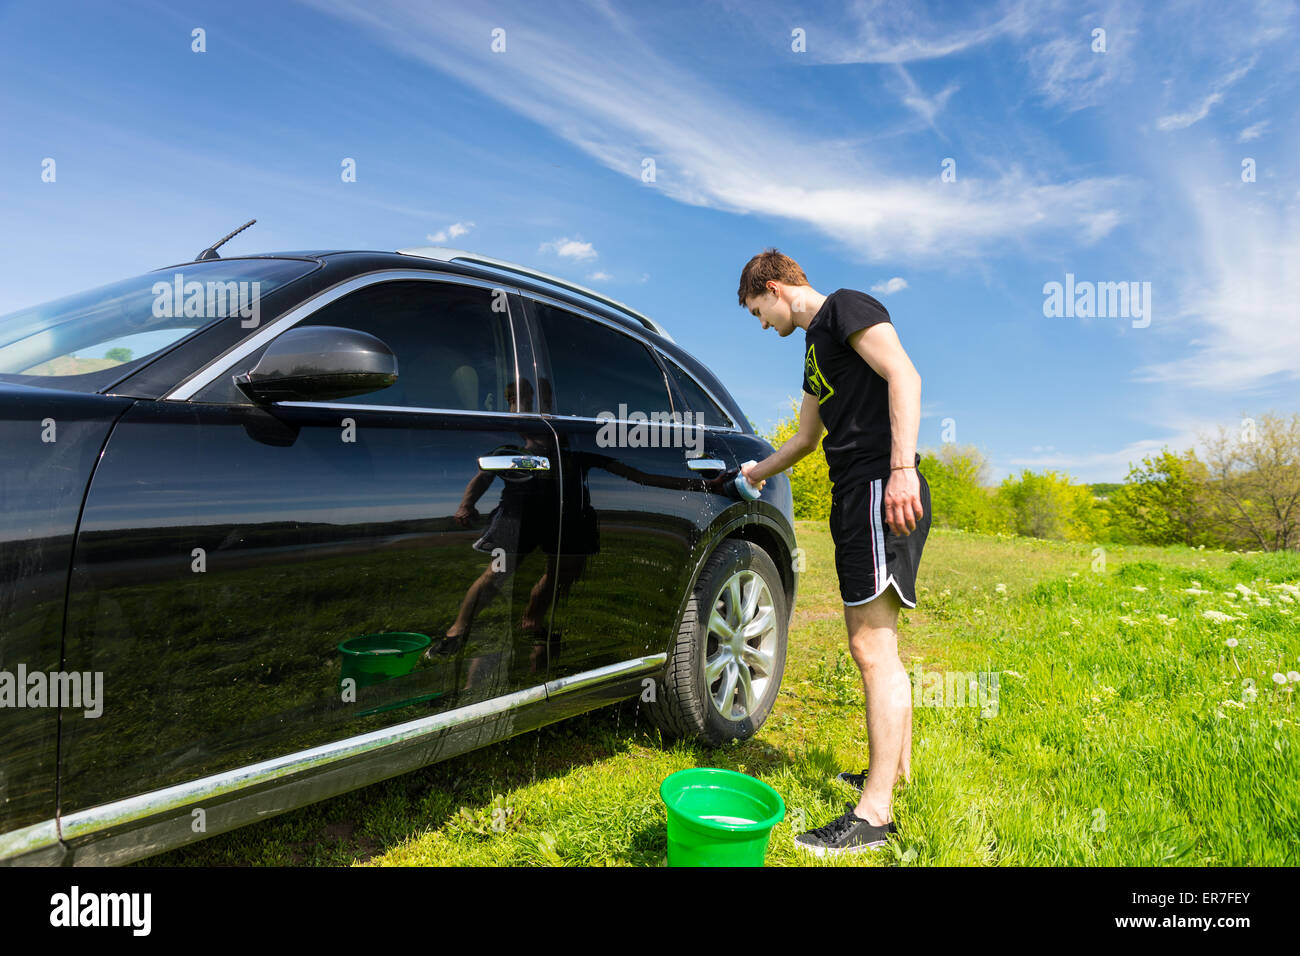 La longueur totale de l'homme lave voiture avec une éponge savonneuse en vert sur le terrain herbeux journée ensoleillée avec ciel bleu Banque D'Images